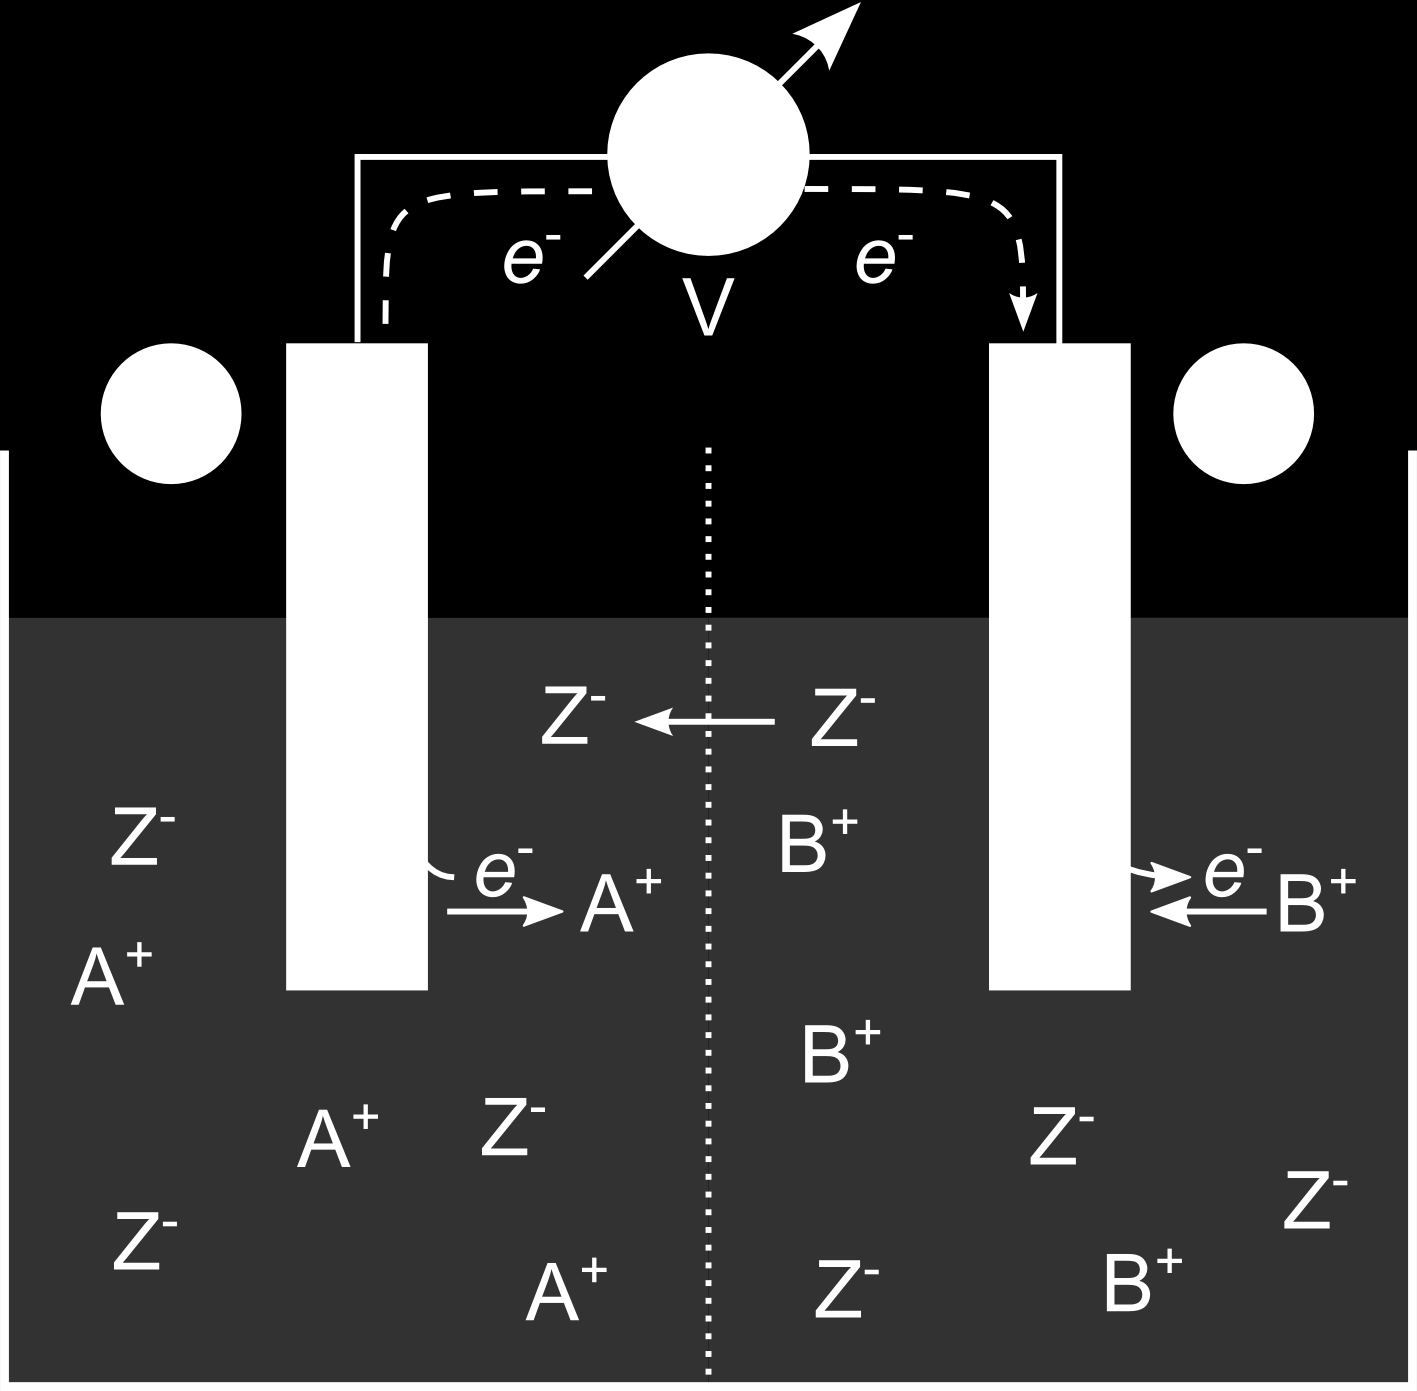 Abbildung 4.5: Schematische Darstellung einer galvanischen Zelle. Die Elektronen fließen von der Anode A zur Katode B.